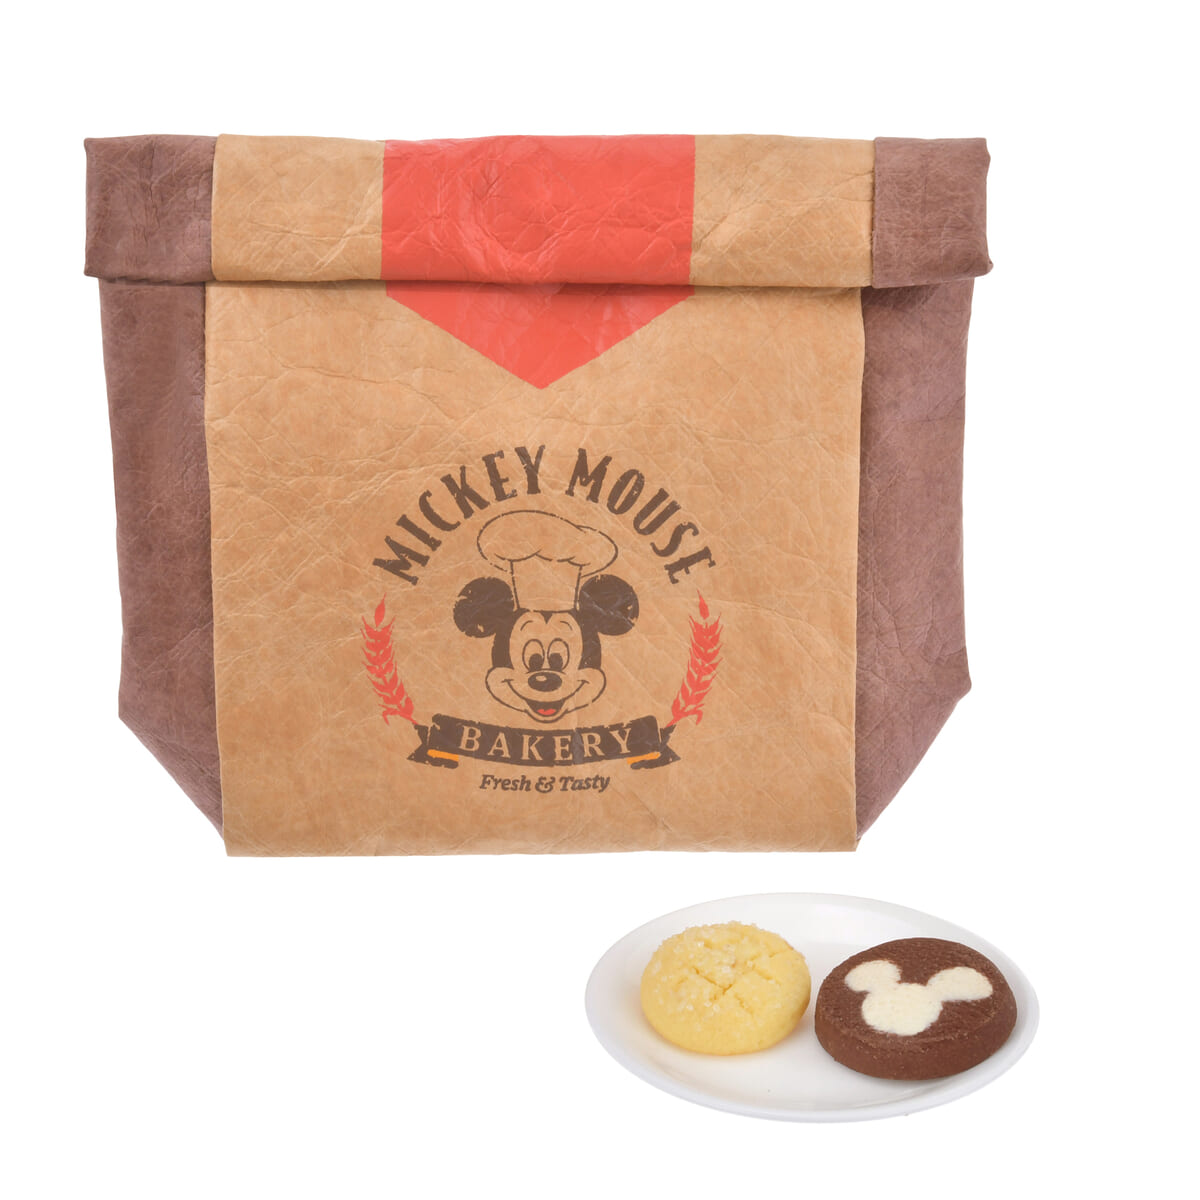 ミッキー 焼き菓子・焼きチョコレート セット ポーチ入り MICKEY'S BAKERY